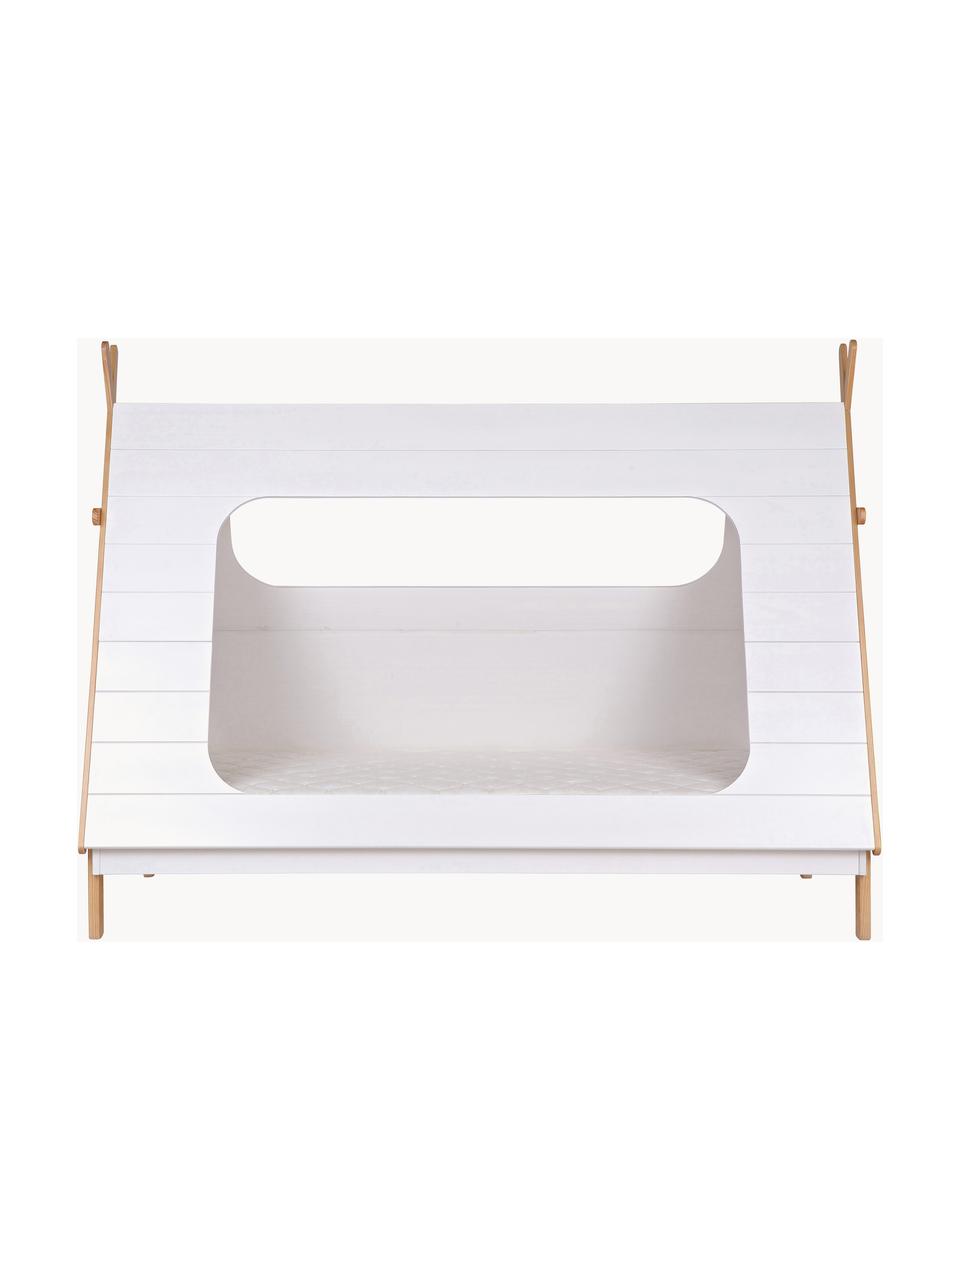 Łóżko z drewna sosnowego dla dzieci Tipi, 90 x 200 cm, Drewno sosnowe, Drewno sosnowe lakierowane na biało, S 90 x D 200 cm